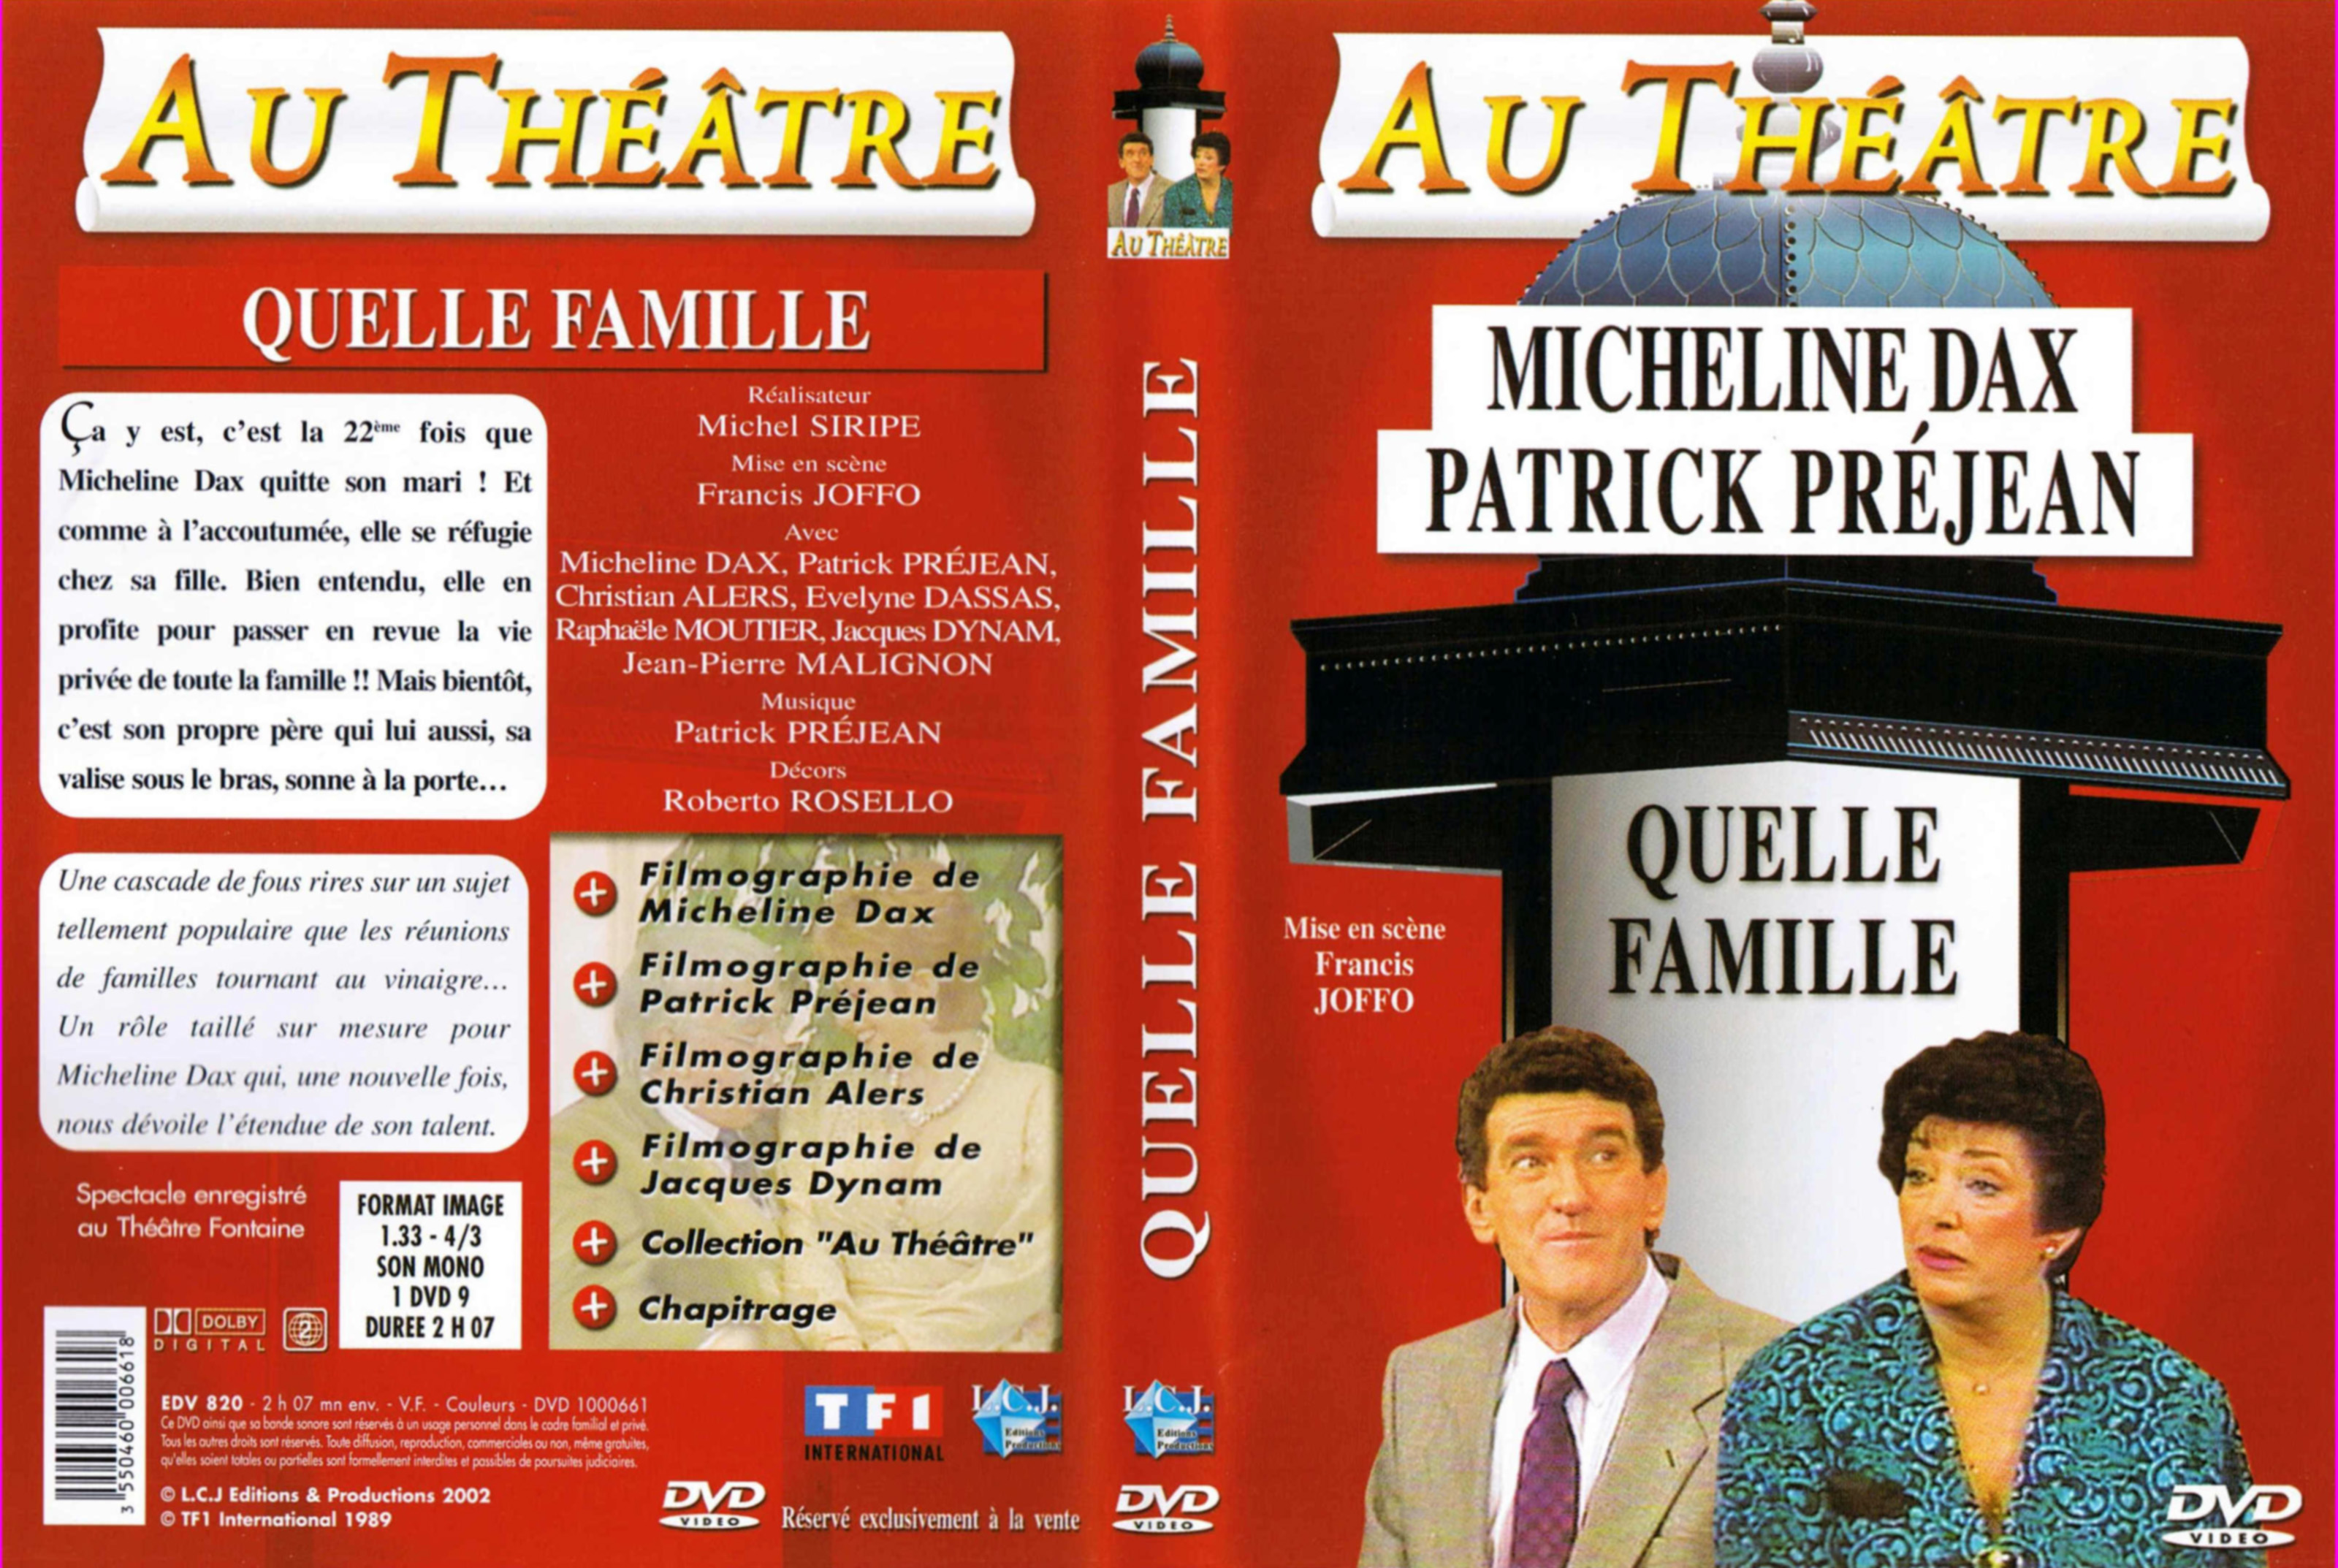 Jaquette DVD Au theatre - quelle famille